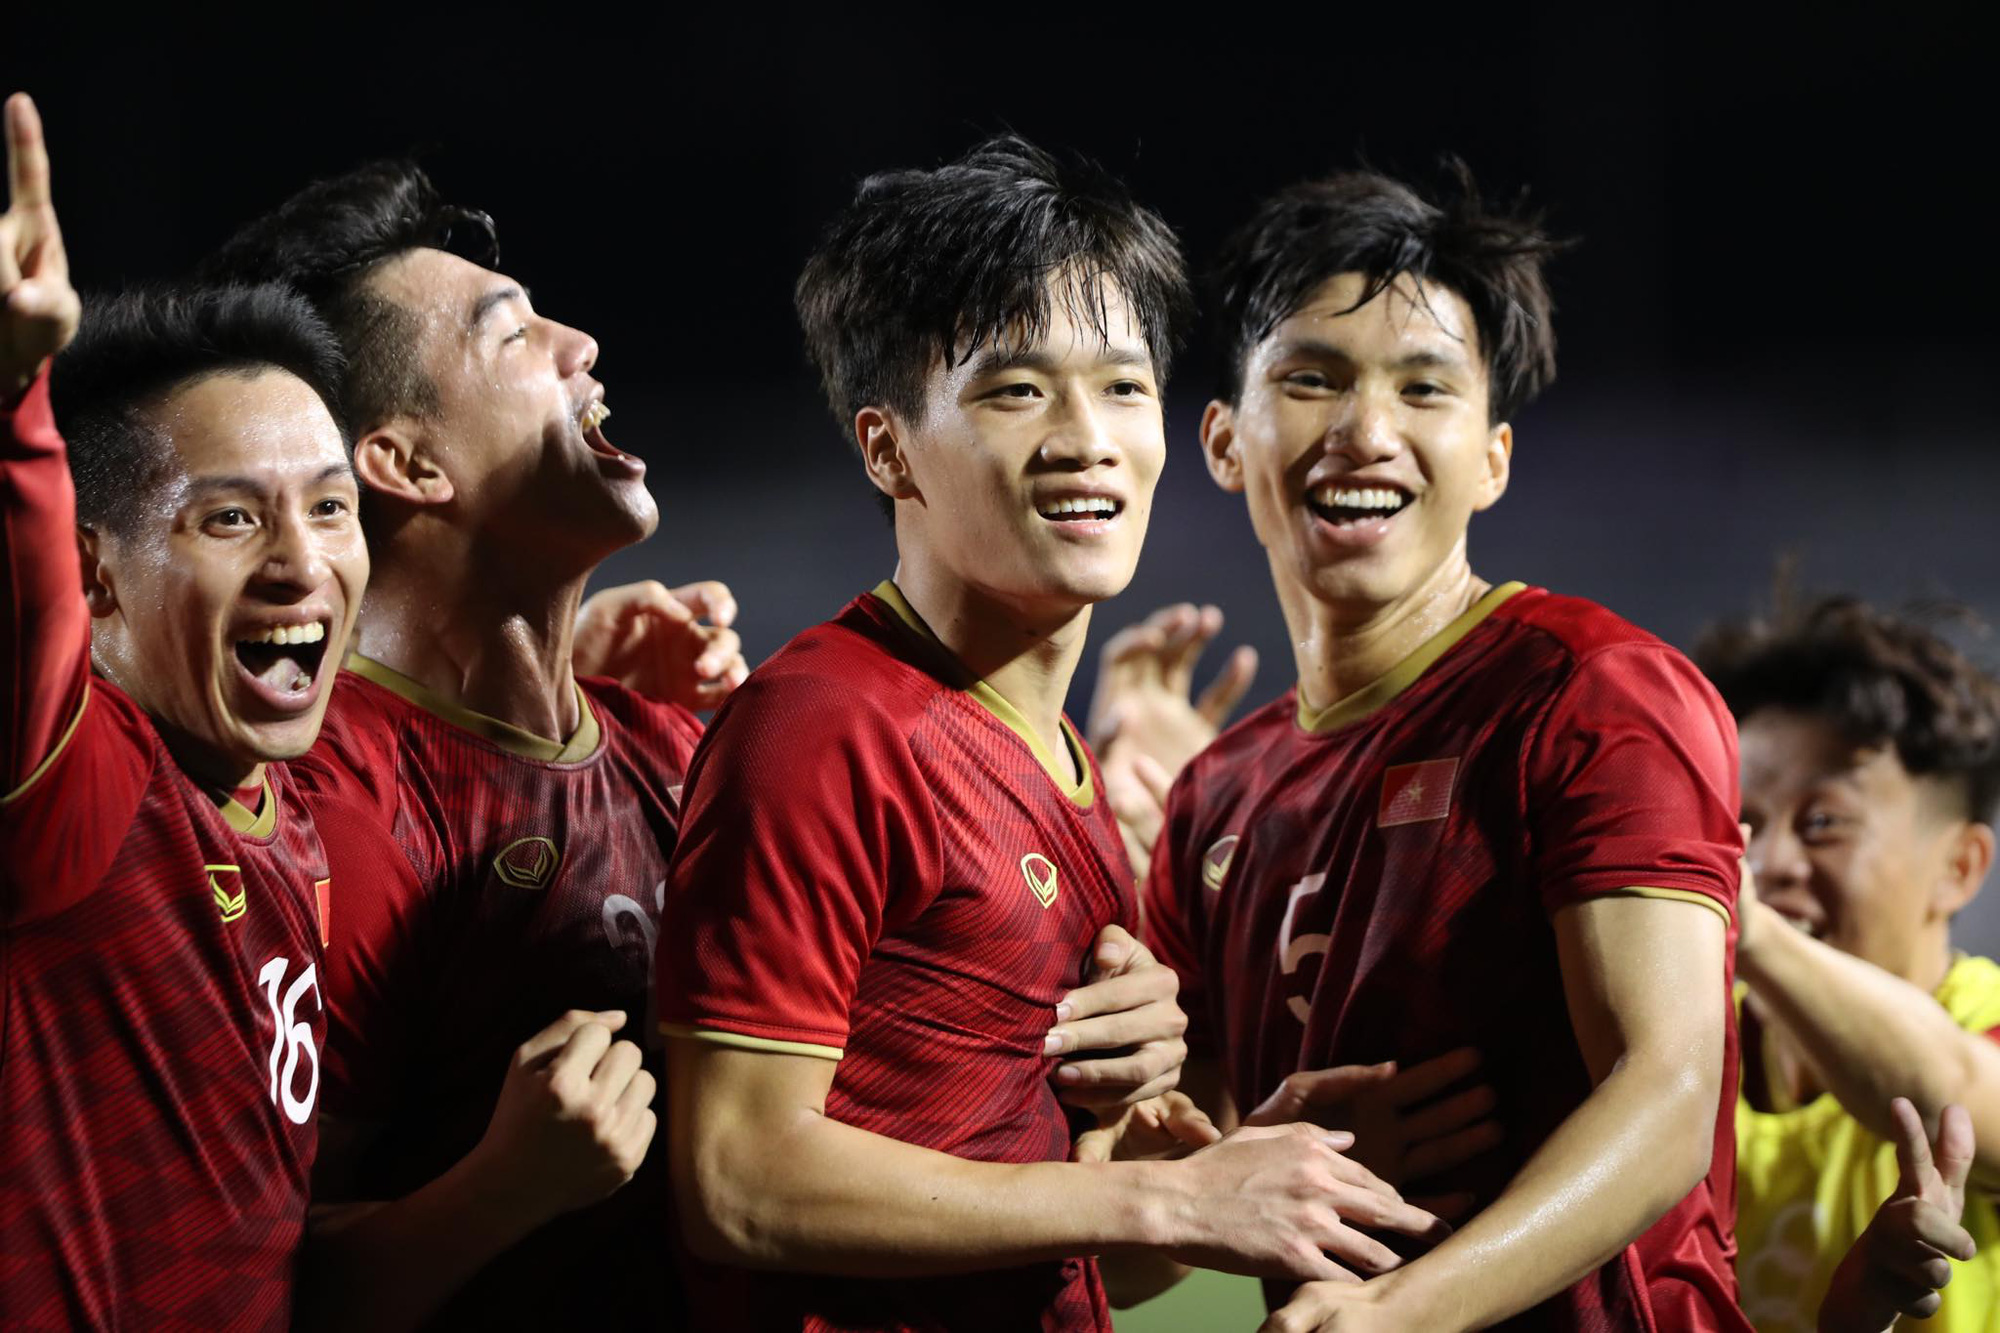 U22 Việt Nam vừa giành chiến thắng vang dội tại giải bóng đá châu Á và được các báo châu Á đánh giá rất cao. Hãy xem lại những khoảnh khắc đáng nhớ và tinh thần với người lao động của các cầu thủ trong trận đấu này.